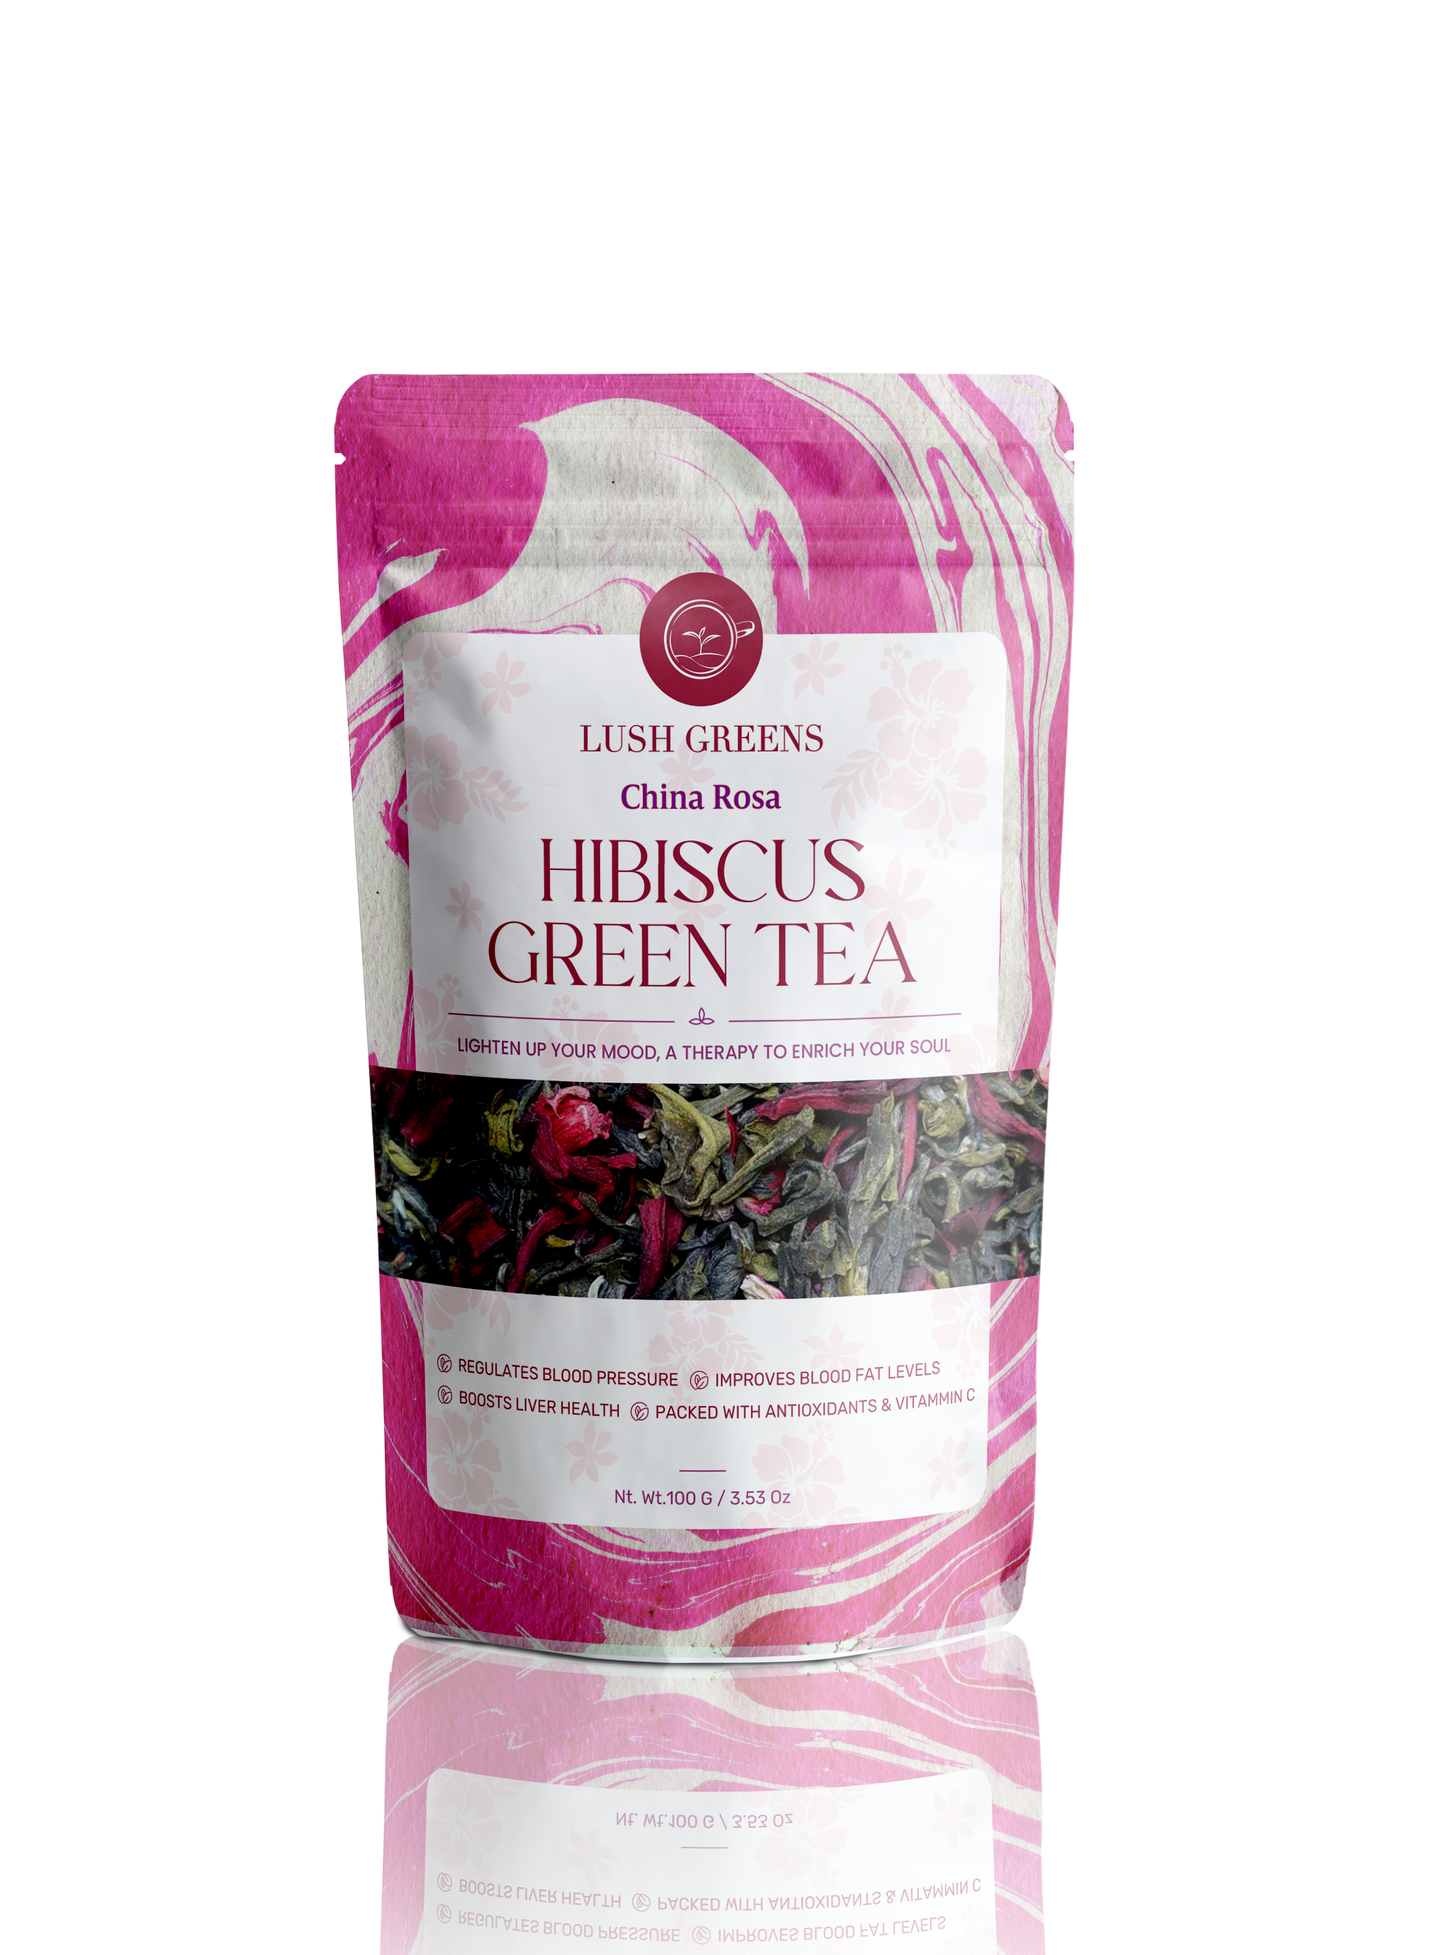 Hibiscus Green Tea - Darjeeling Region